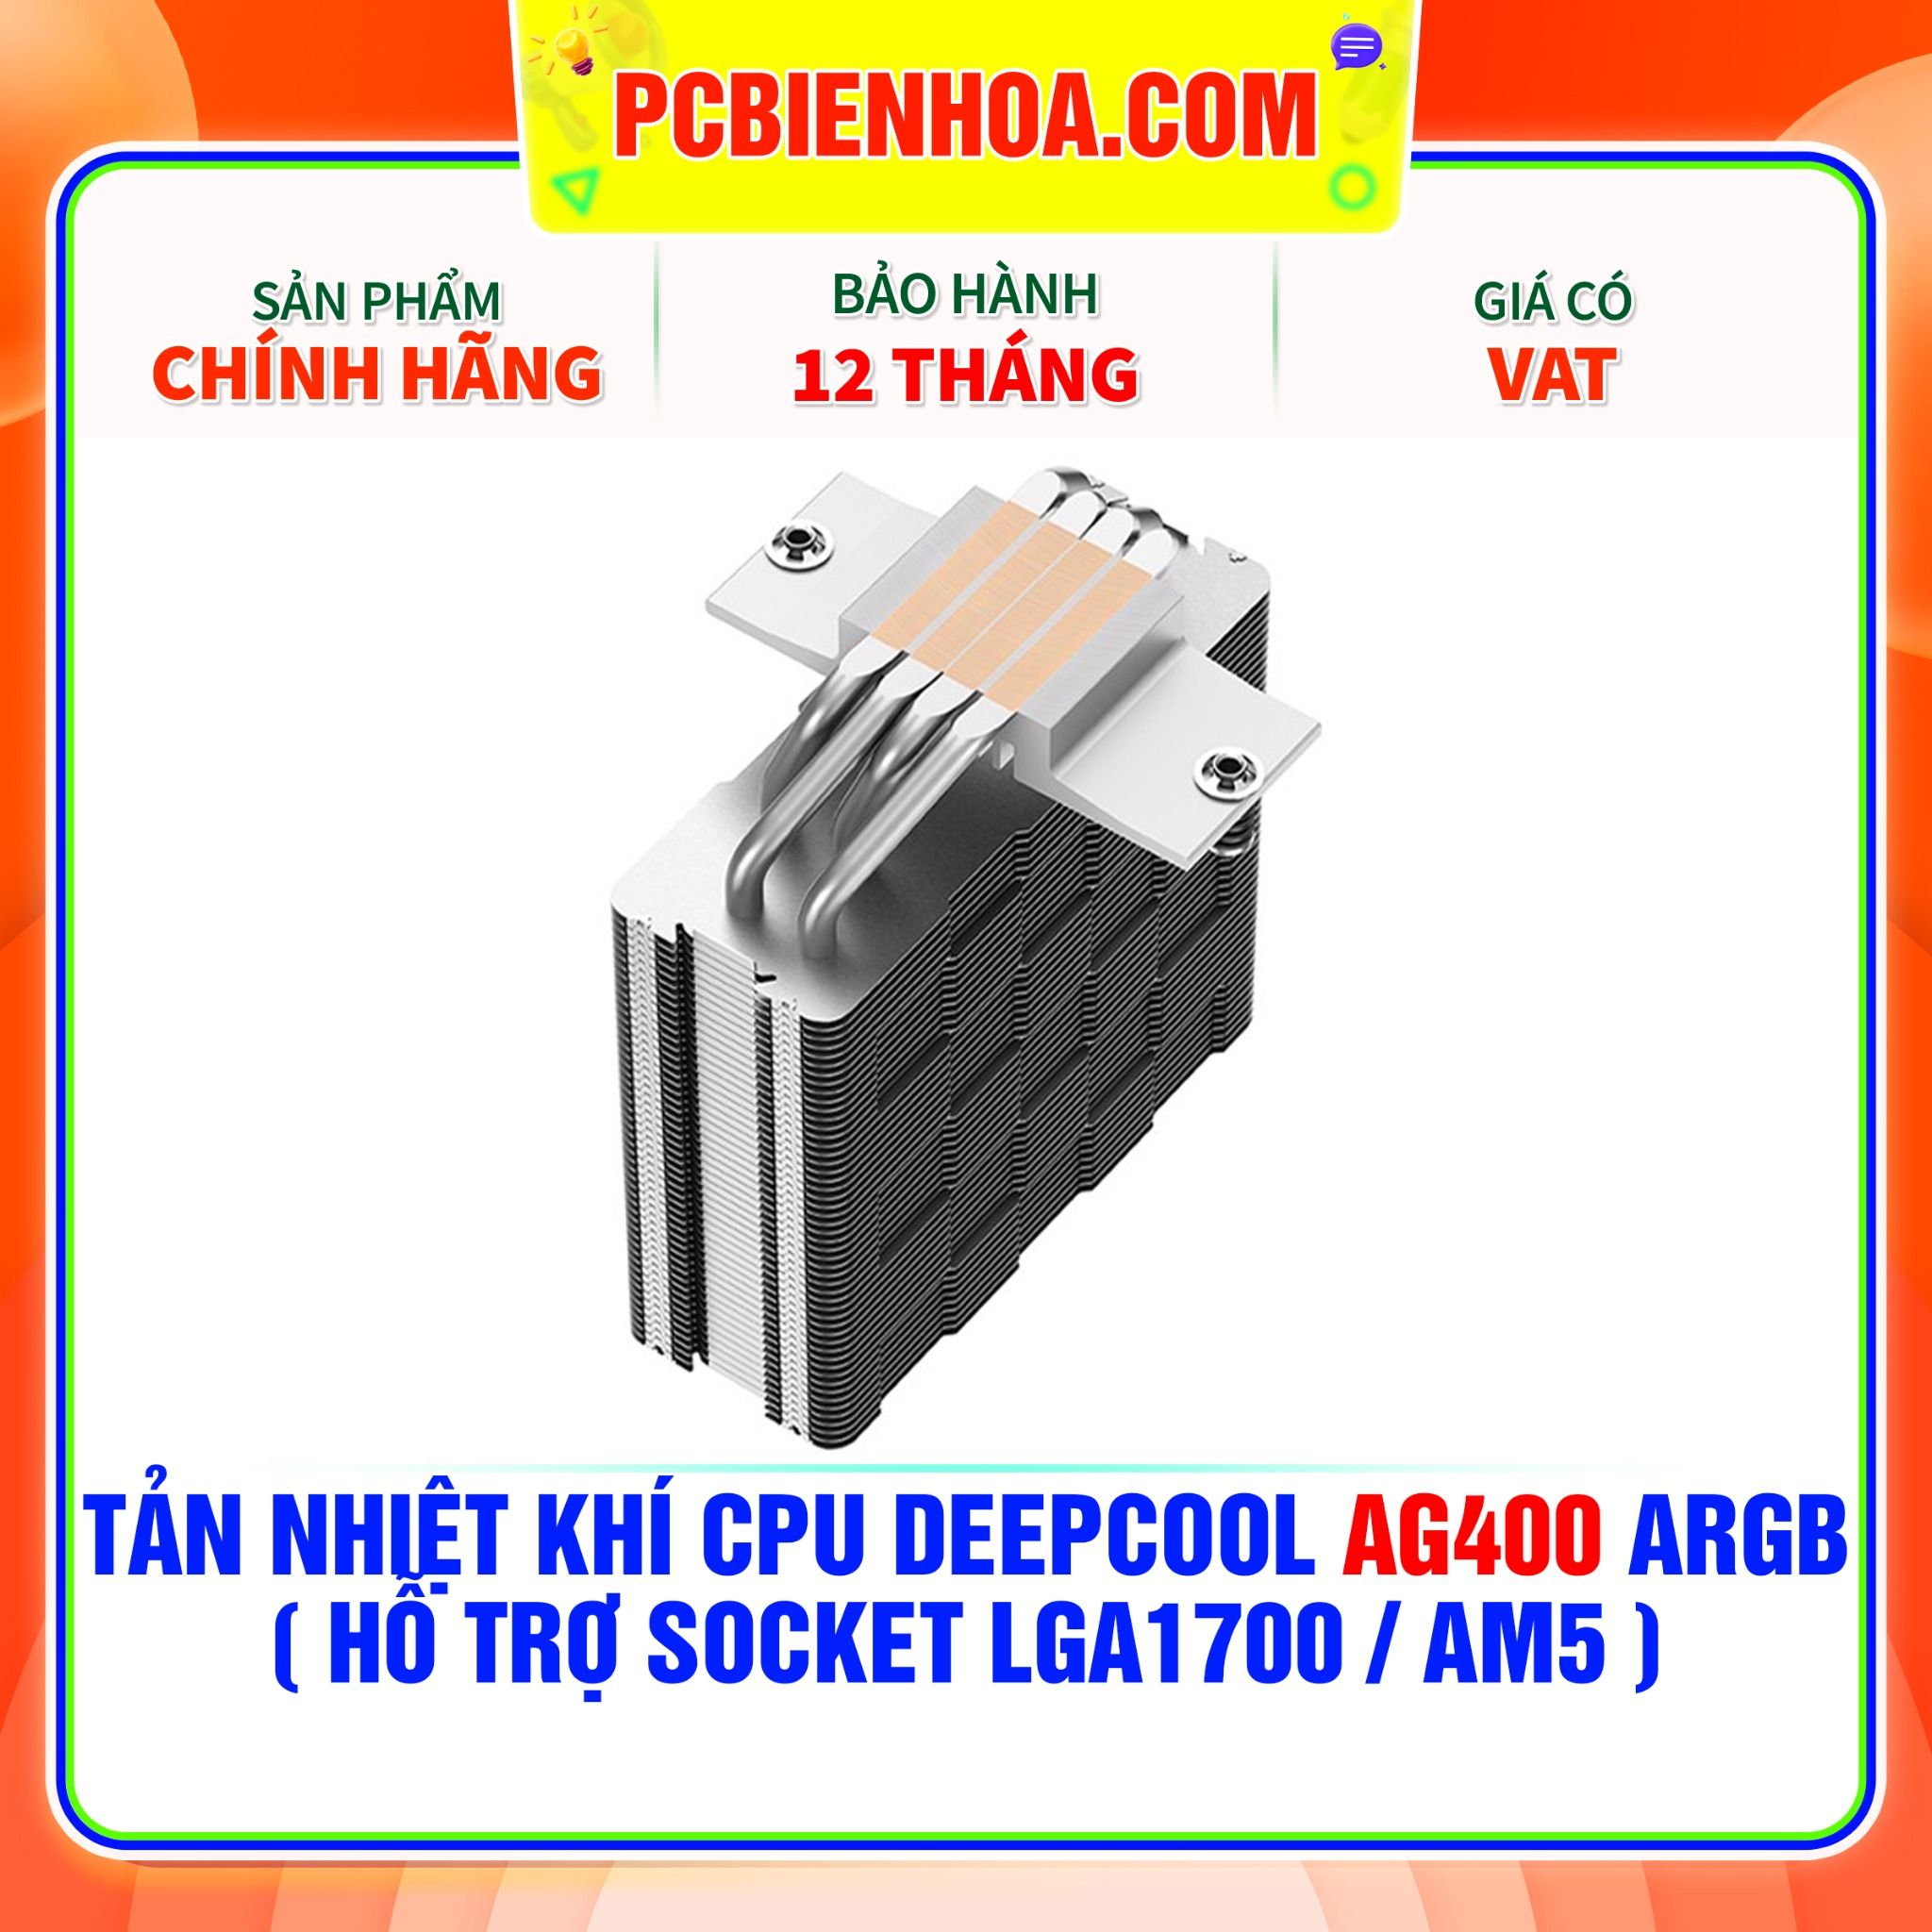  TẢN NHIỆT KHÍ CPU DEEPCOOL AG400 ARGB ( HỖ TRỢ SOCKET LGA1700 / AM5 ) 